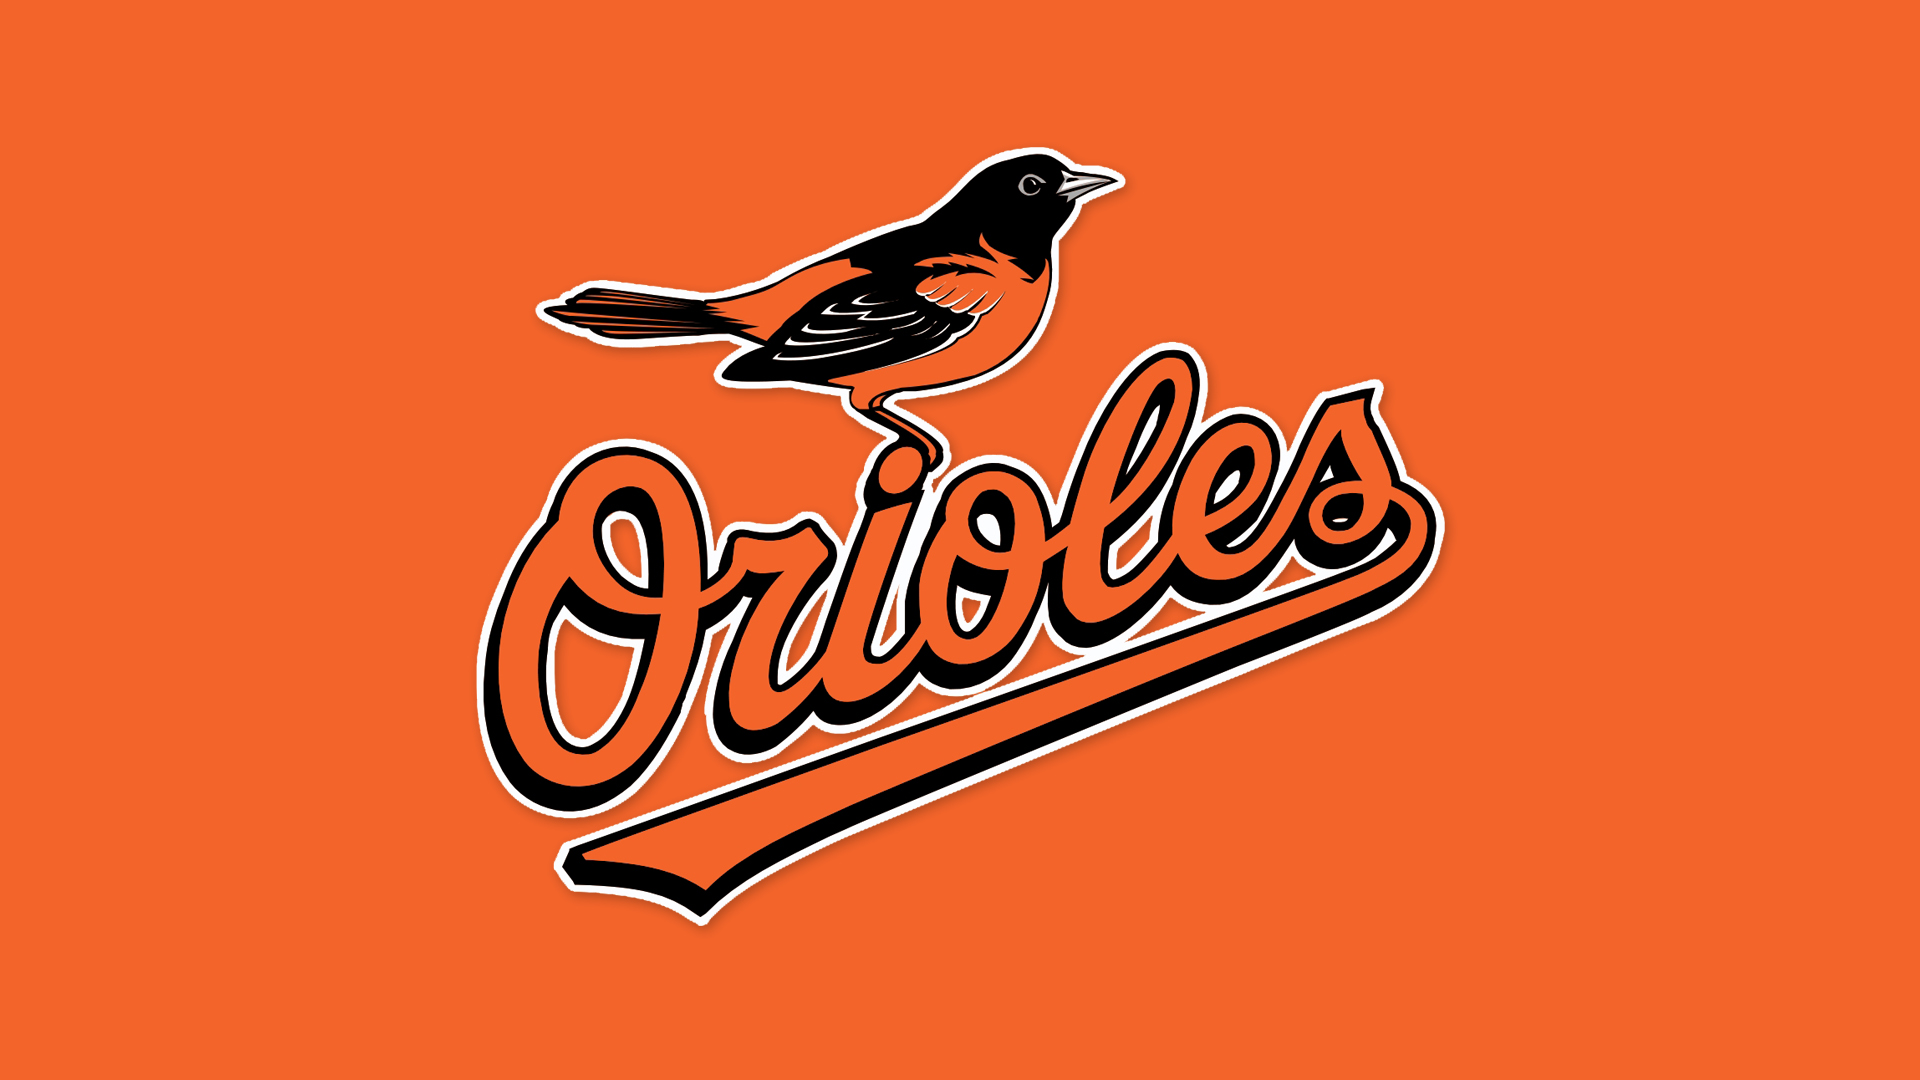 Baltimore Orioles Baseball Official Logo Mlb Camden Yard